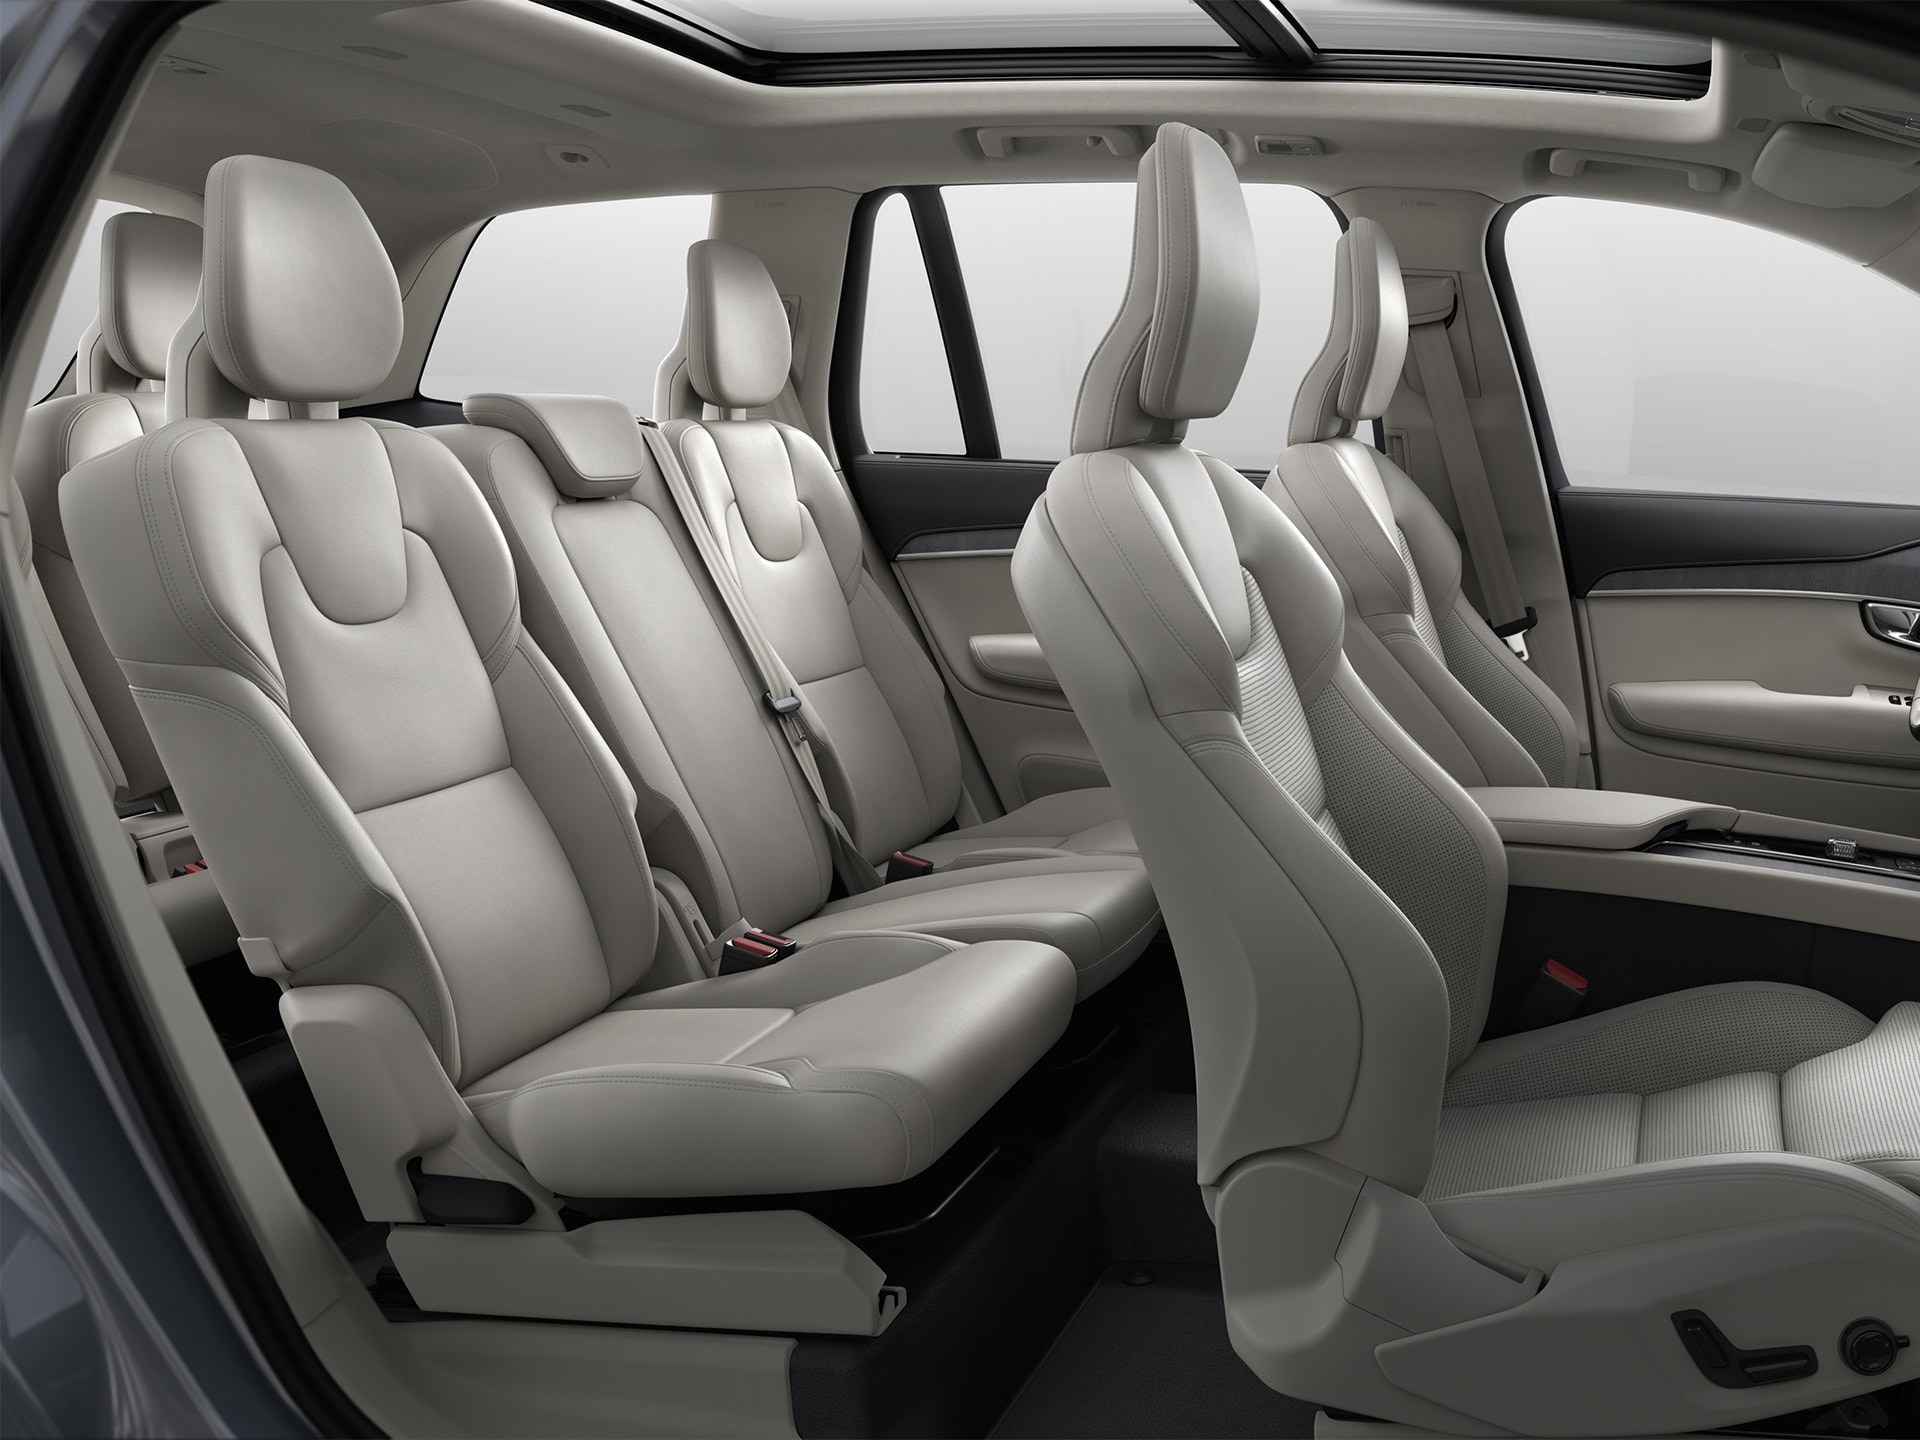 Intérieur spacieux et confortable du SUV Volvo XC90.